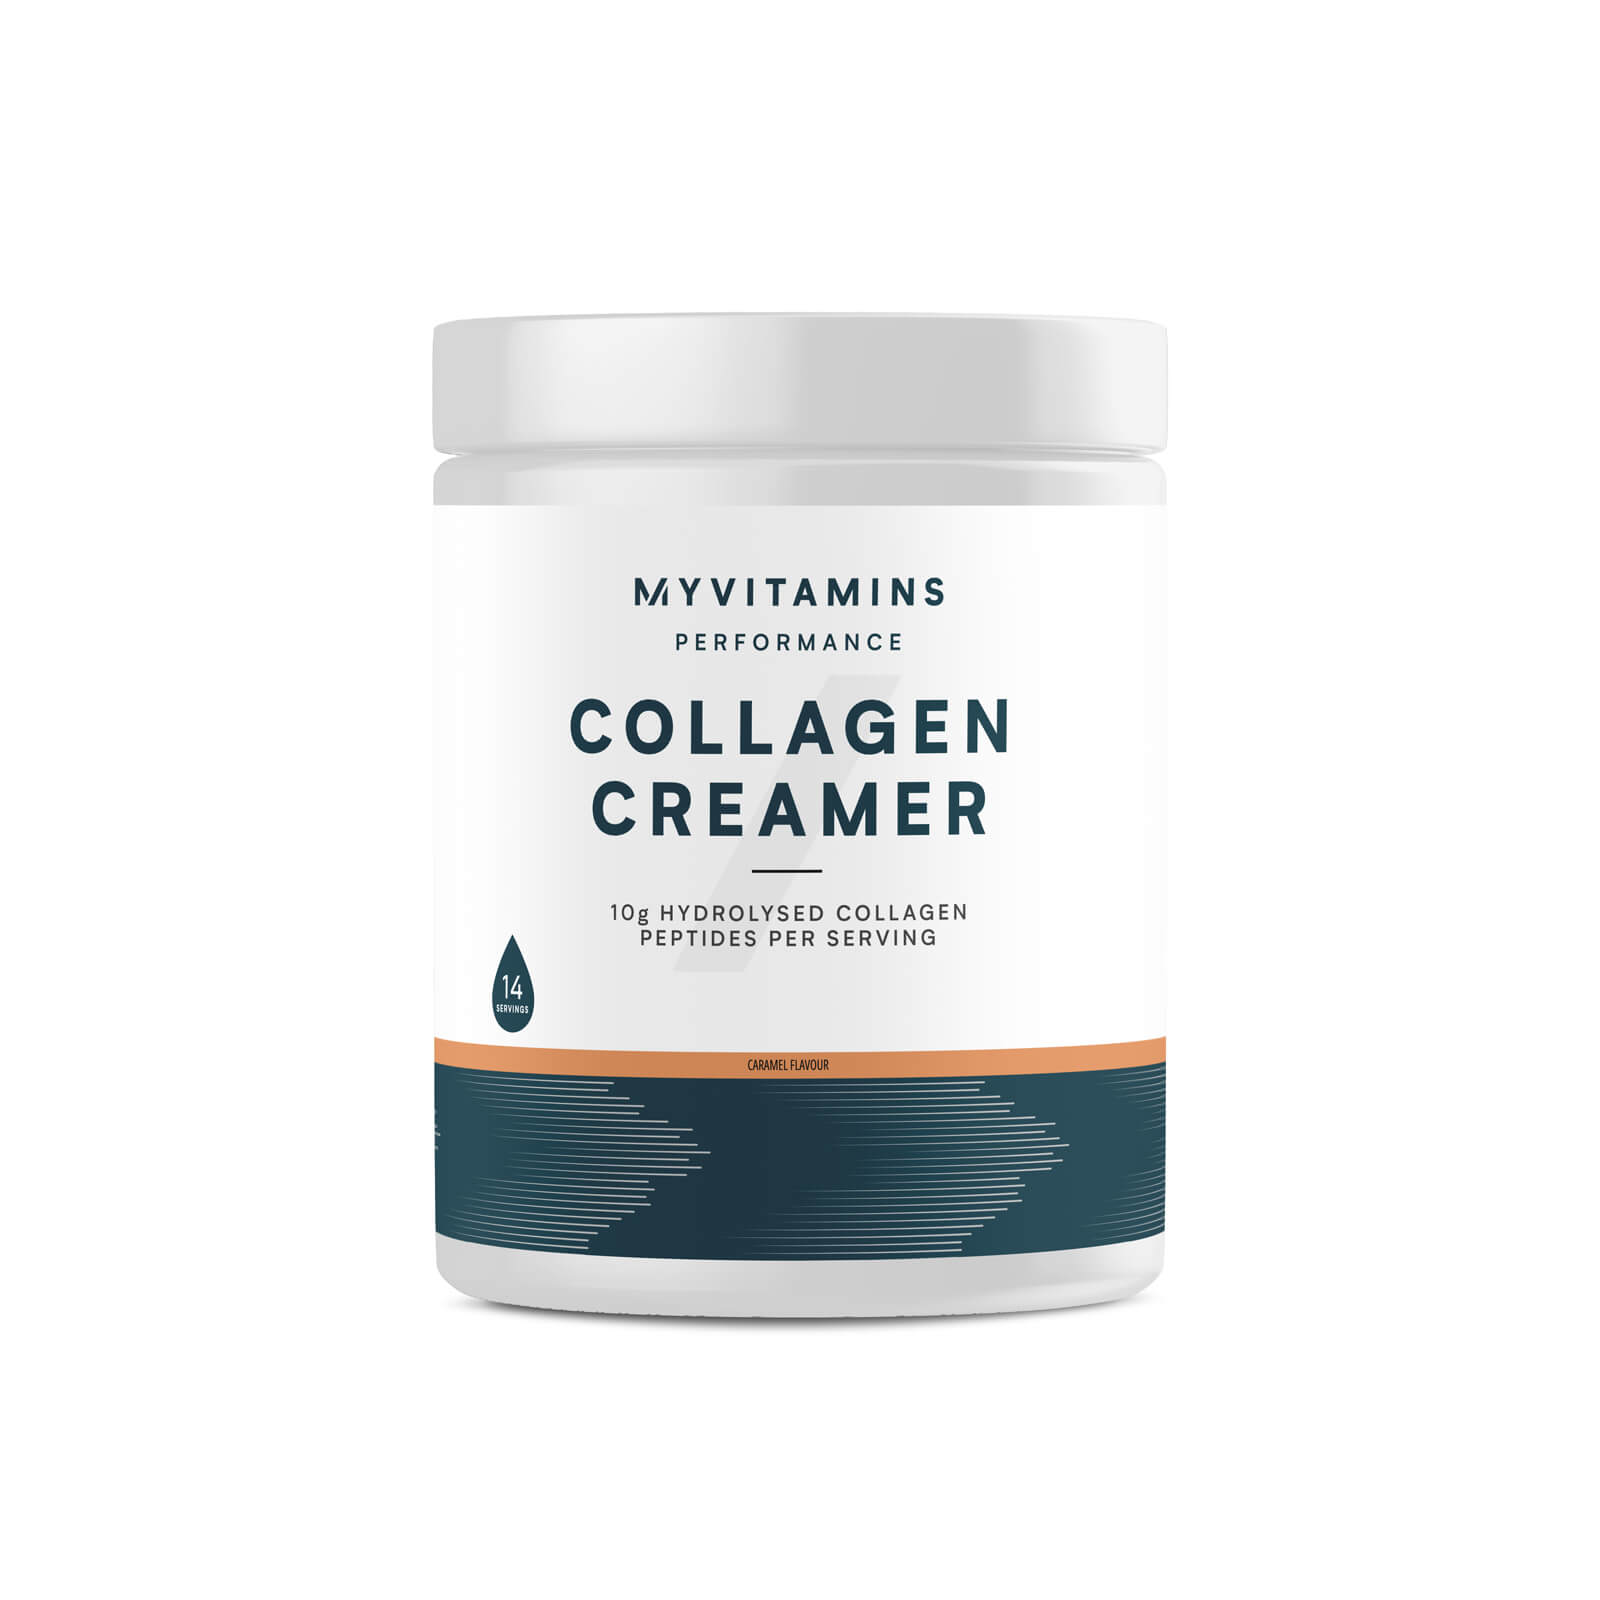 Myvitamins Collagen Creamer Tub - 197g - Caramel